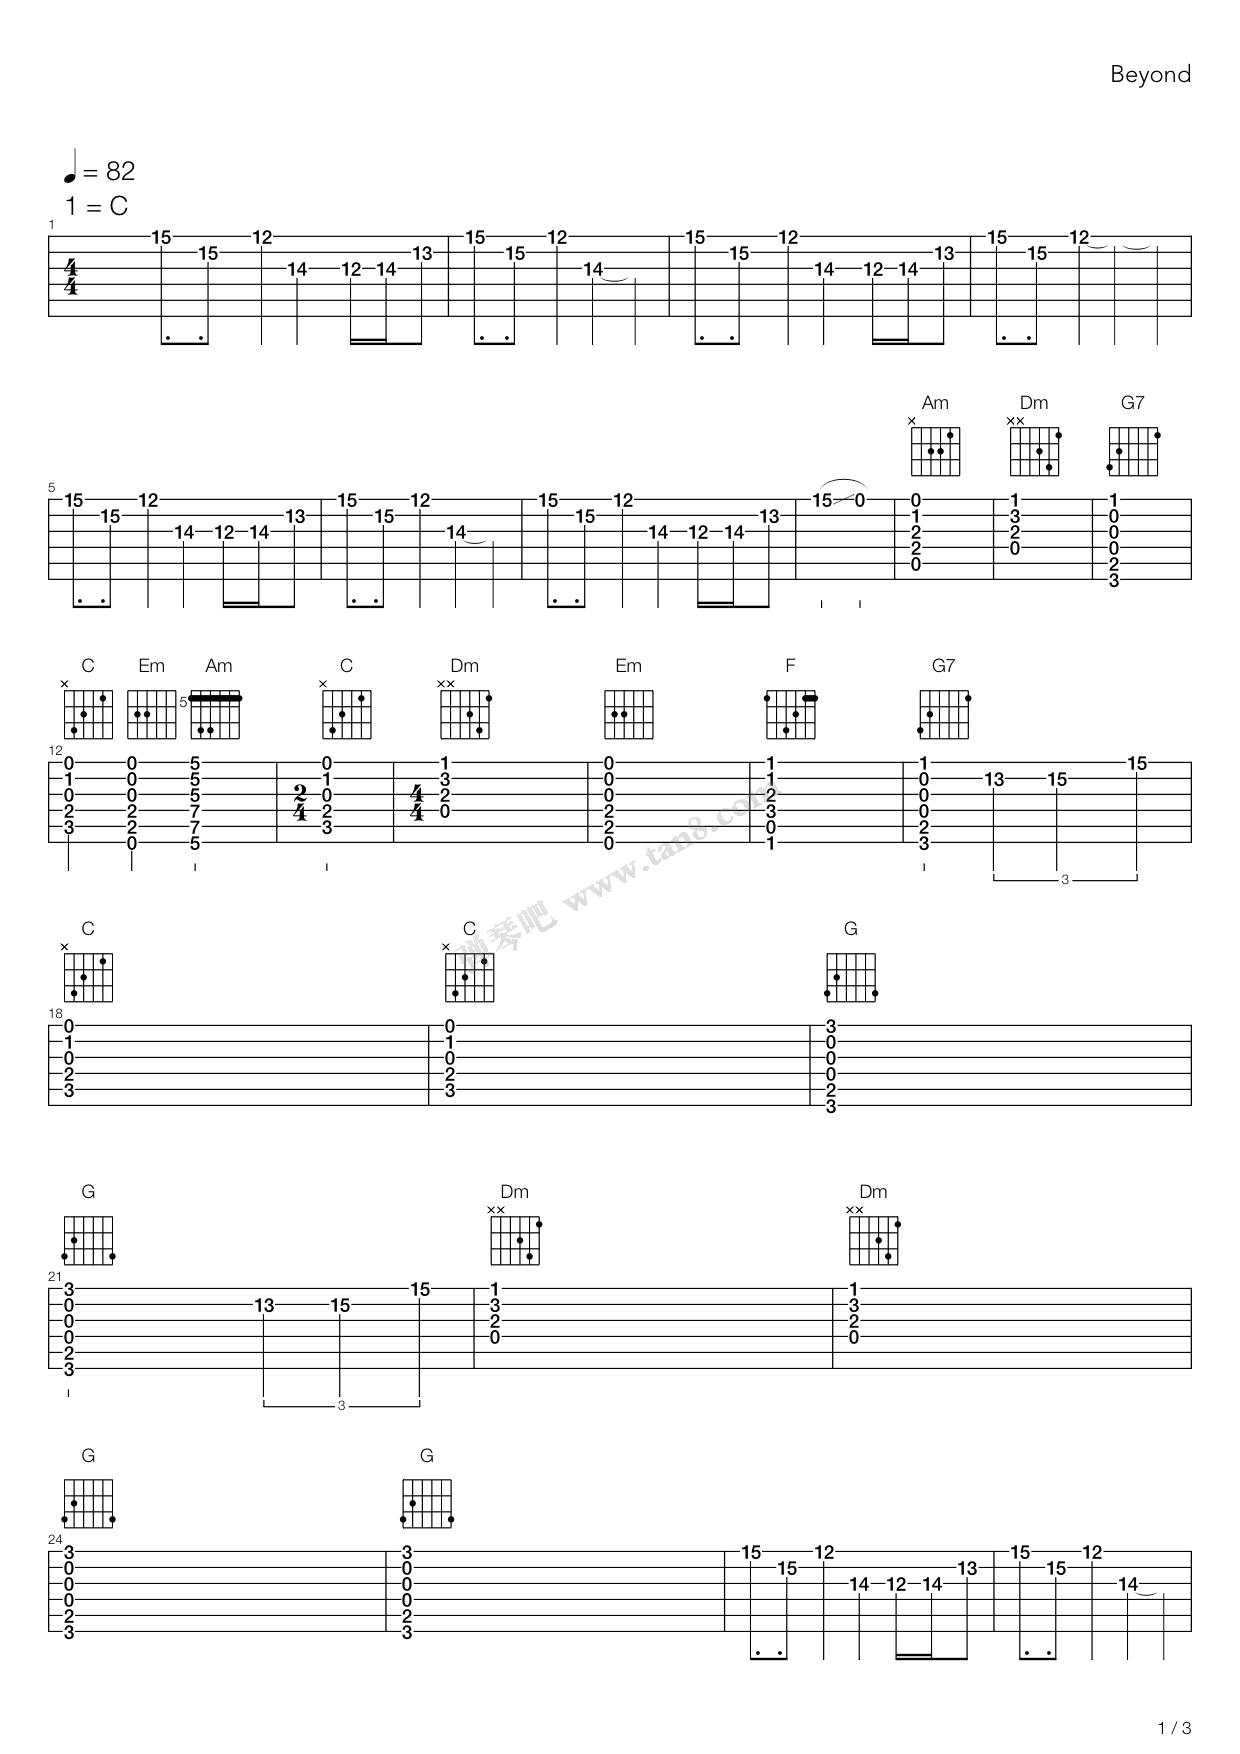 钢琴谱《思念无声》用简单数字版制谱 - 白痴弹法 - 单手双手钢琴谱 - 钢琴简谱